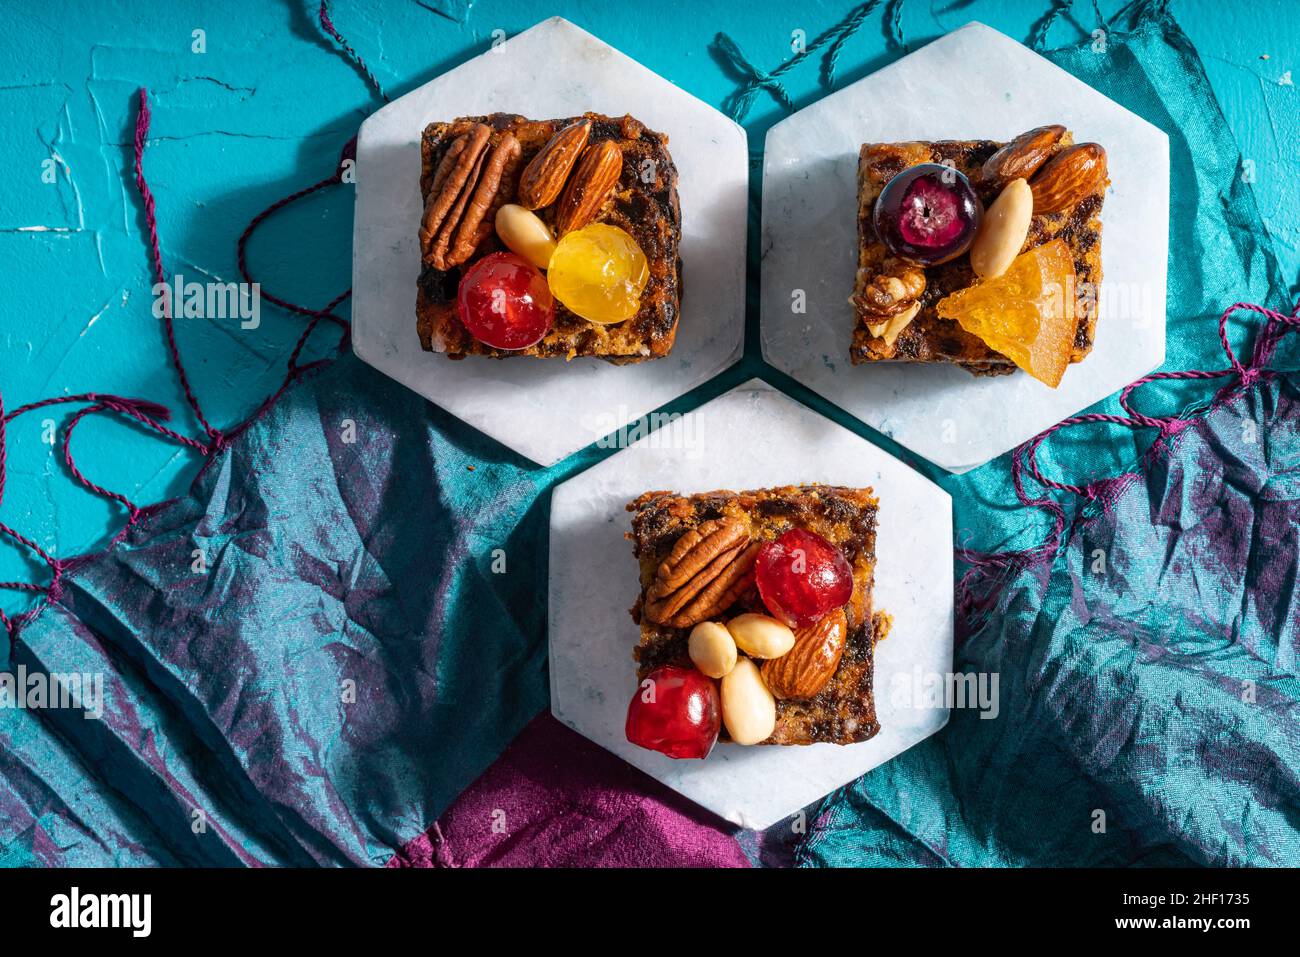 Ricco dolce budino natalizio carico di frutta secca, noci e spezie su un vibrante sfondo turchese orientale Foto Stock